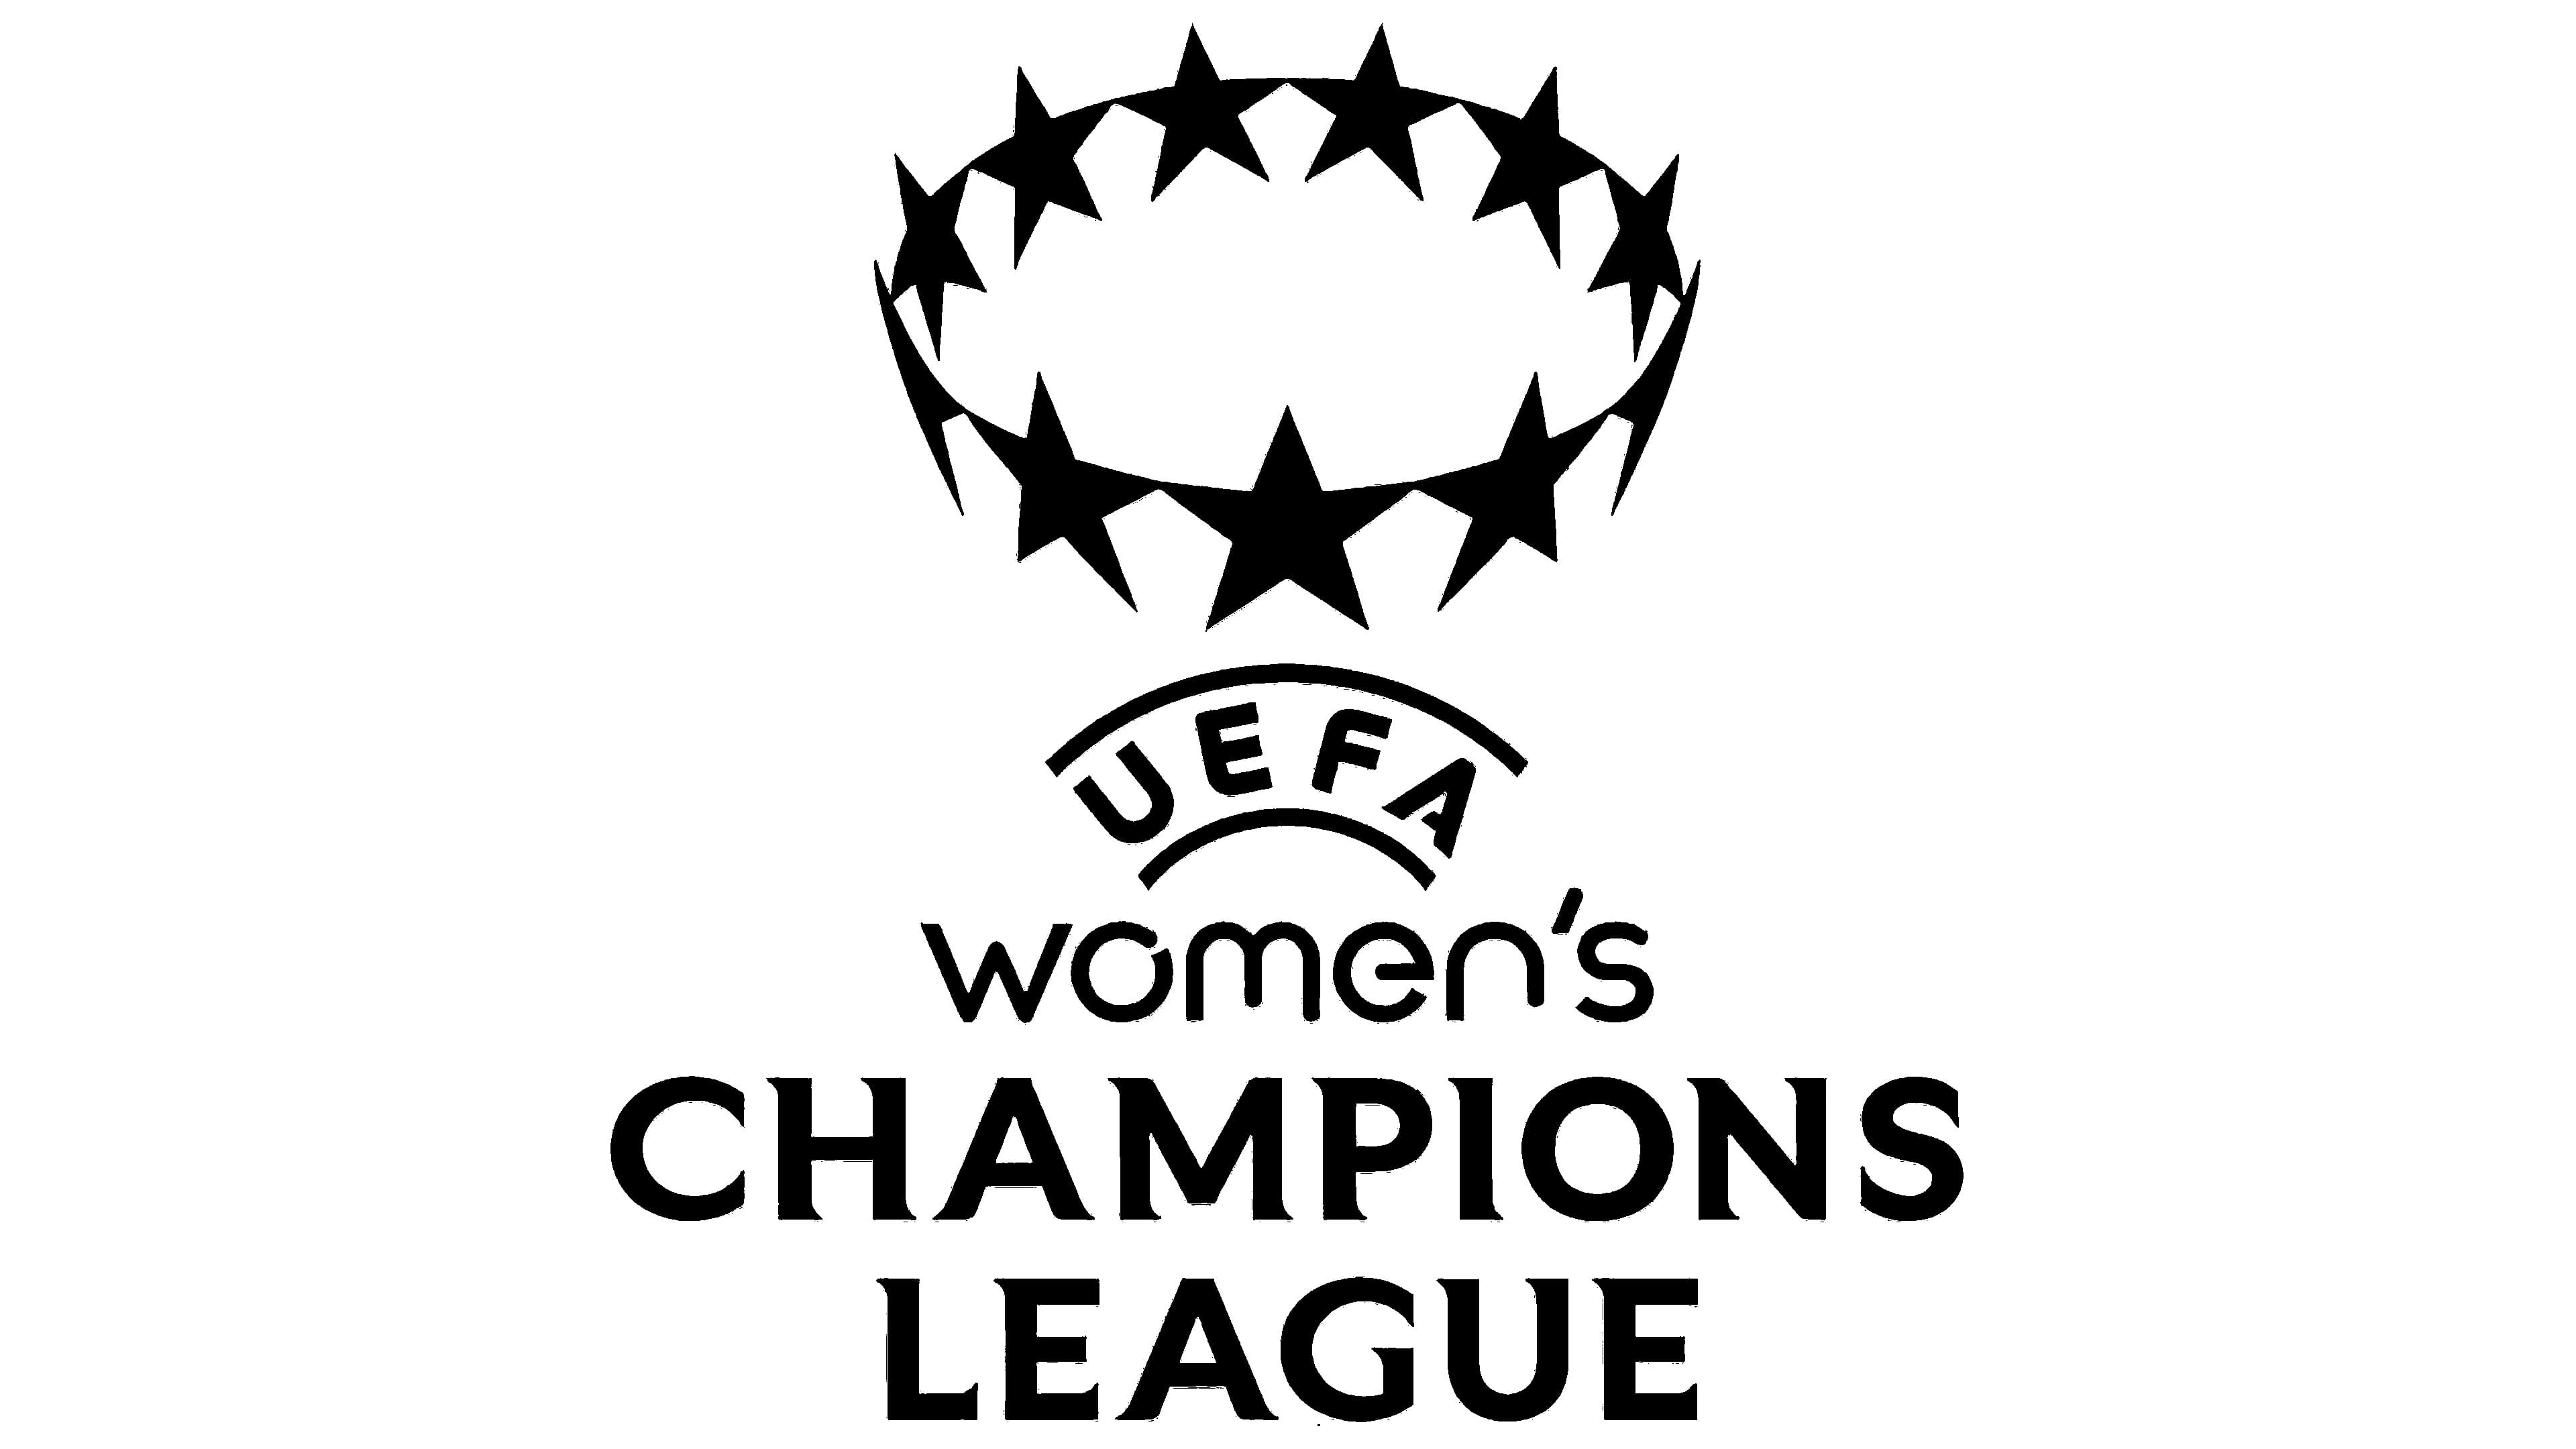 La Liga de Campeones Femenina de la UEFA presenta un nuevo logotipo e